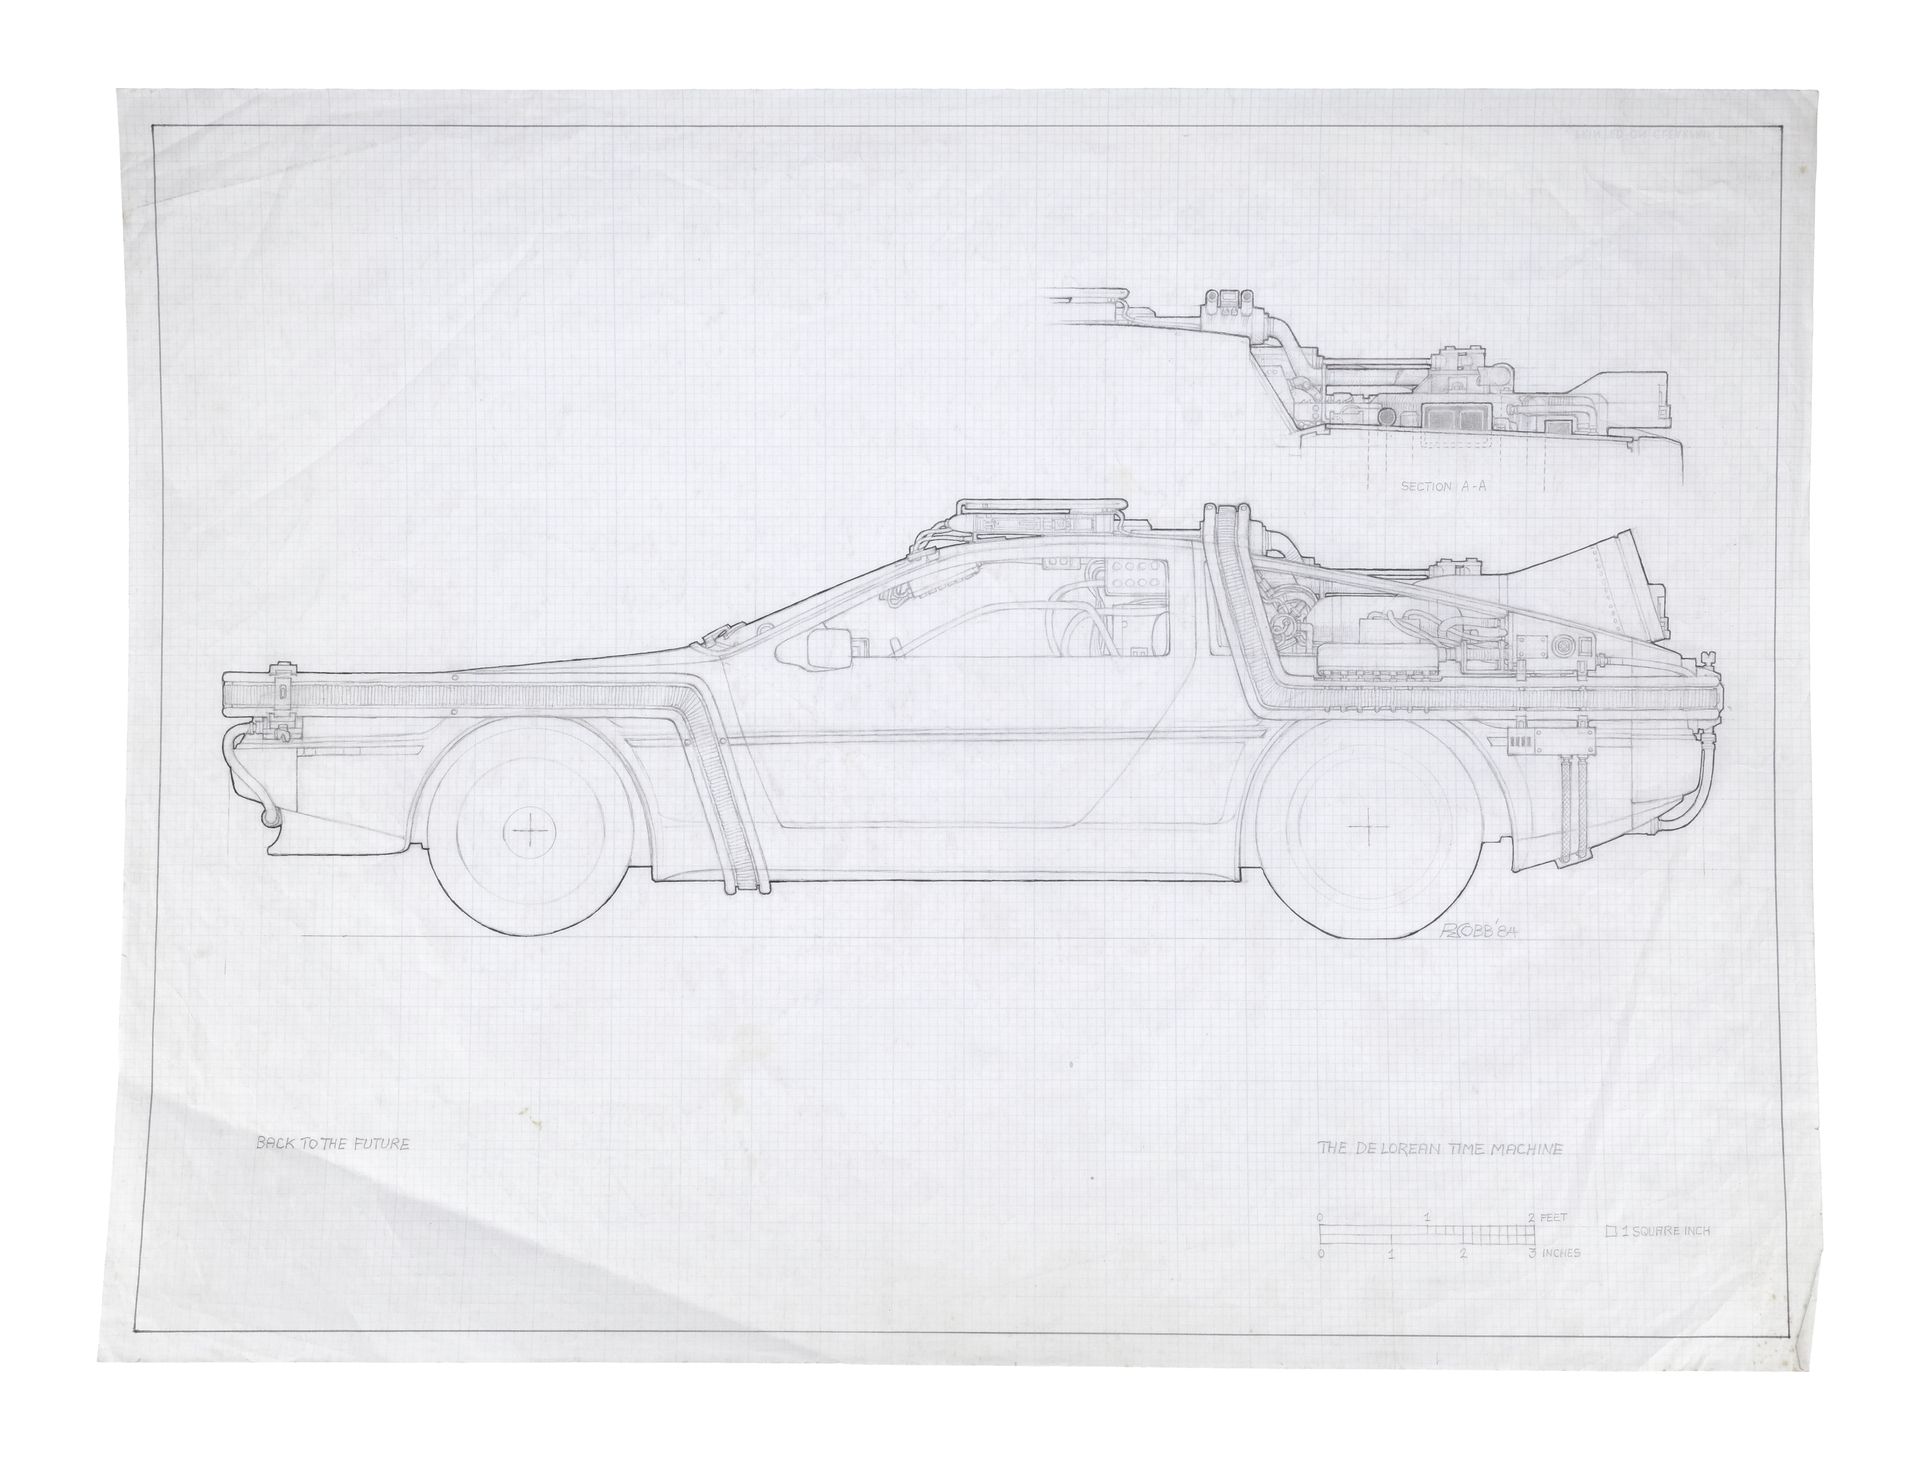 BACK TO THE FUTURE (1985) - Hand-Drawn Ron Cobb Interior DeLorean Time Machine Concept Art